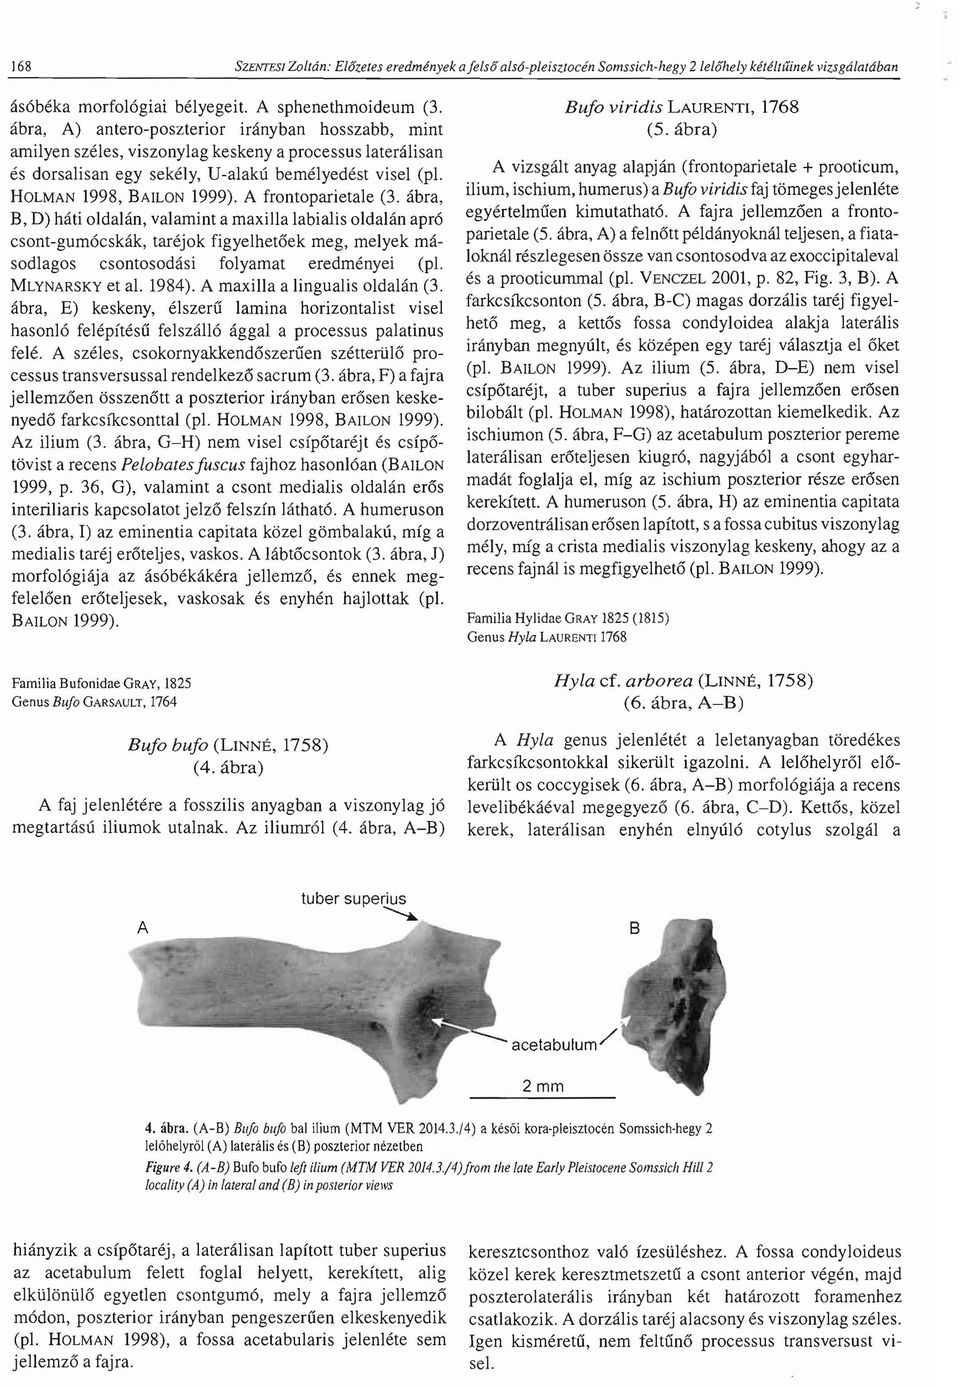 A frontoparietale (3. abra, B, D) hati oldalan, valamint a maxilla labialis oldalan apr6 csont-gum6cskak, tarejok figyelhet6ek meg, melyek masodlagos csontosodasi folyamat eredmenyei (pi.